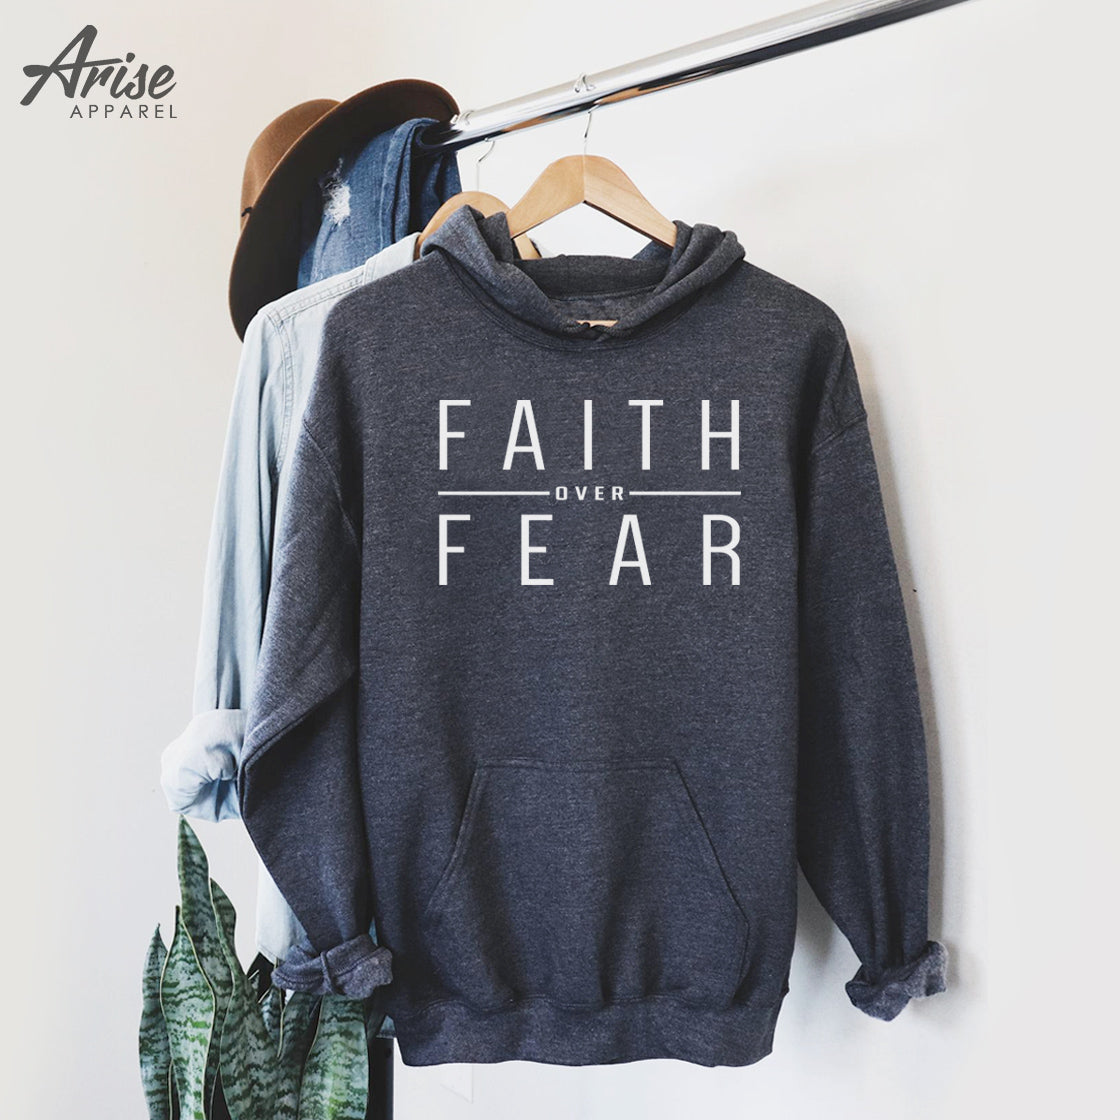 faith over fear sweatshirt